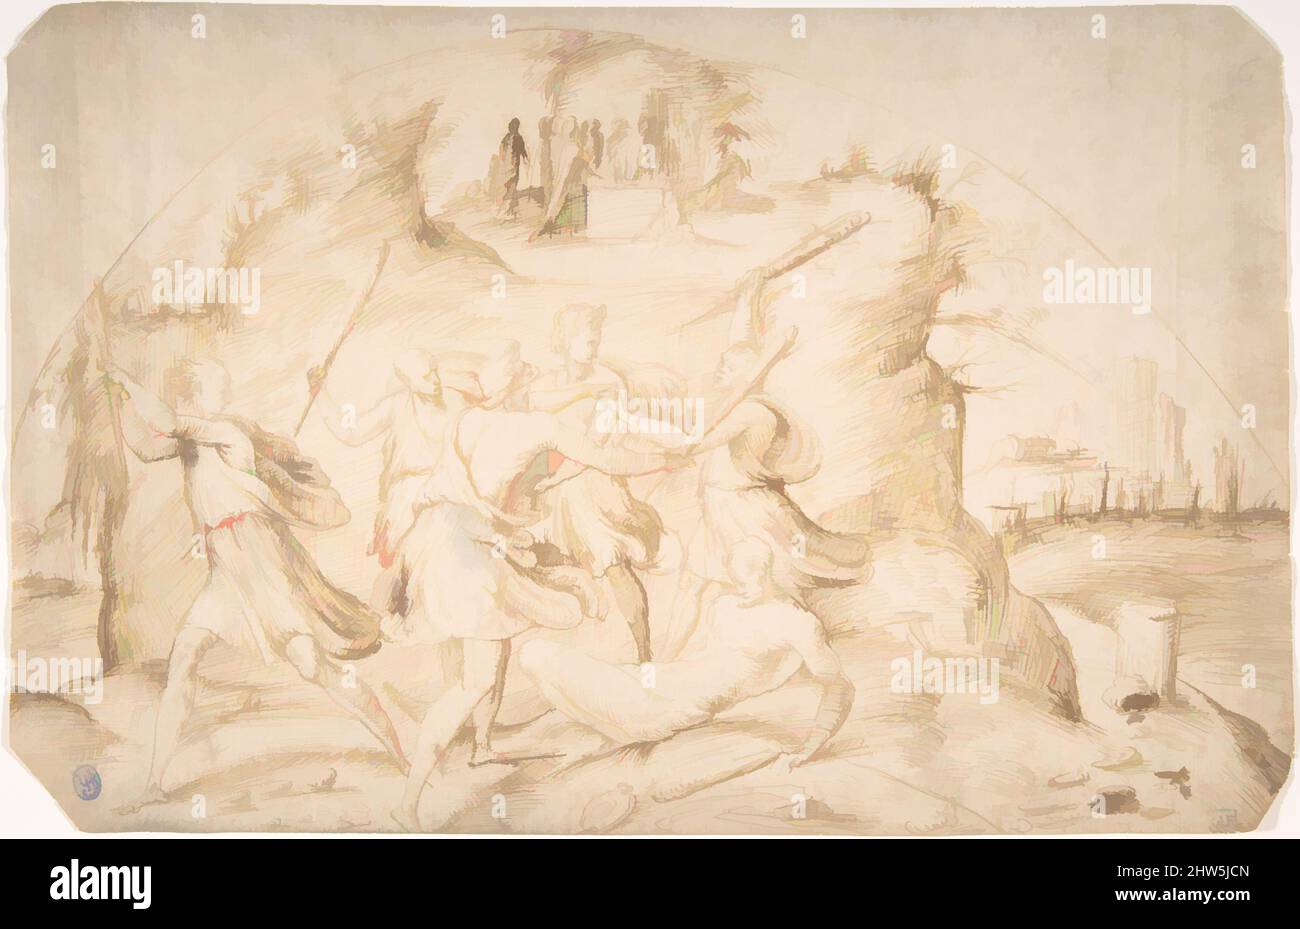 Art inspiré par l'âge du fer, 1520s–30s, encre stylo et brune, feuille : 8 x 12 3/8 po. (20,3 x 31,5 cm), dessins, attribués à Alonso Berruguete (espagnol, Paredes de Nava (Palencia) 1486–1561 Toledo, œuvres classiques modernisées par Artotop avec une touche de modernité. Formes, couleur et valeur, impact visuel accrocheur sur l'art émotions par la liberté d'œuvres d'art d'une manière contemporaine. Un message intemporel qui cherche une nouvelle direction créative. Artistes qui se tournent vers le support numérique et créent le NFT Artotop Banque D'Images